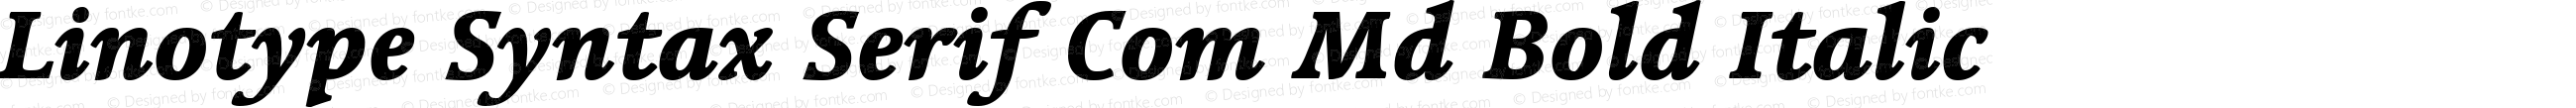 Linotype Syntax Serif Com Heavy Italic